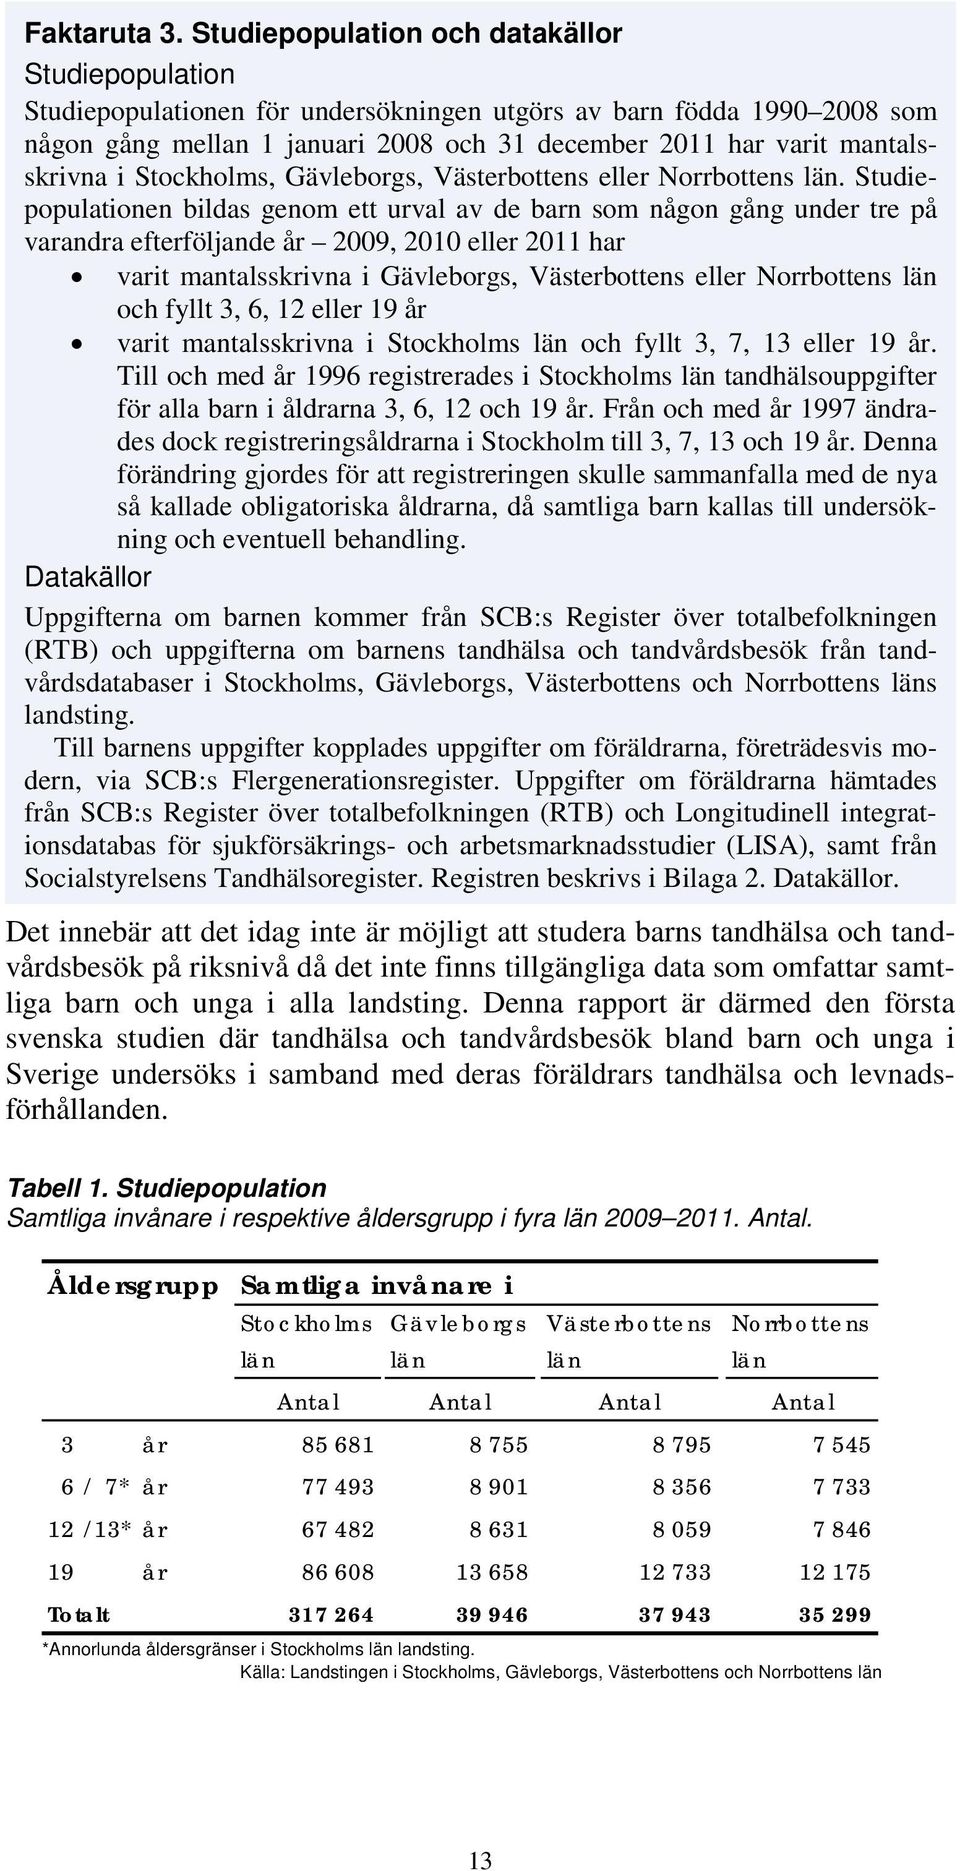 mantalsskrivna i Stockholms, Gävleborgs, Västerbottens eller Norrbottens län.